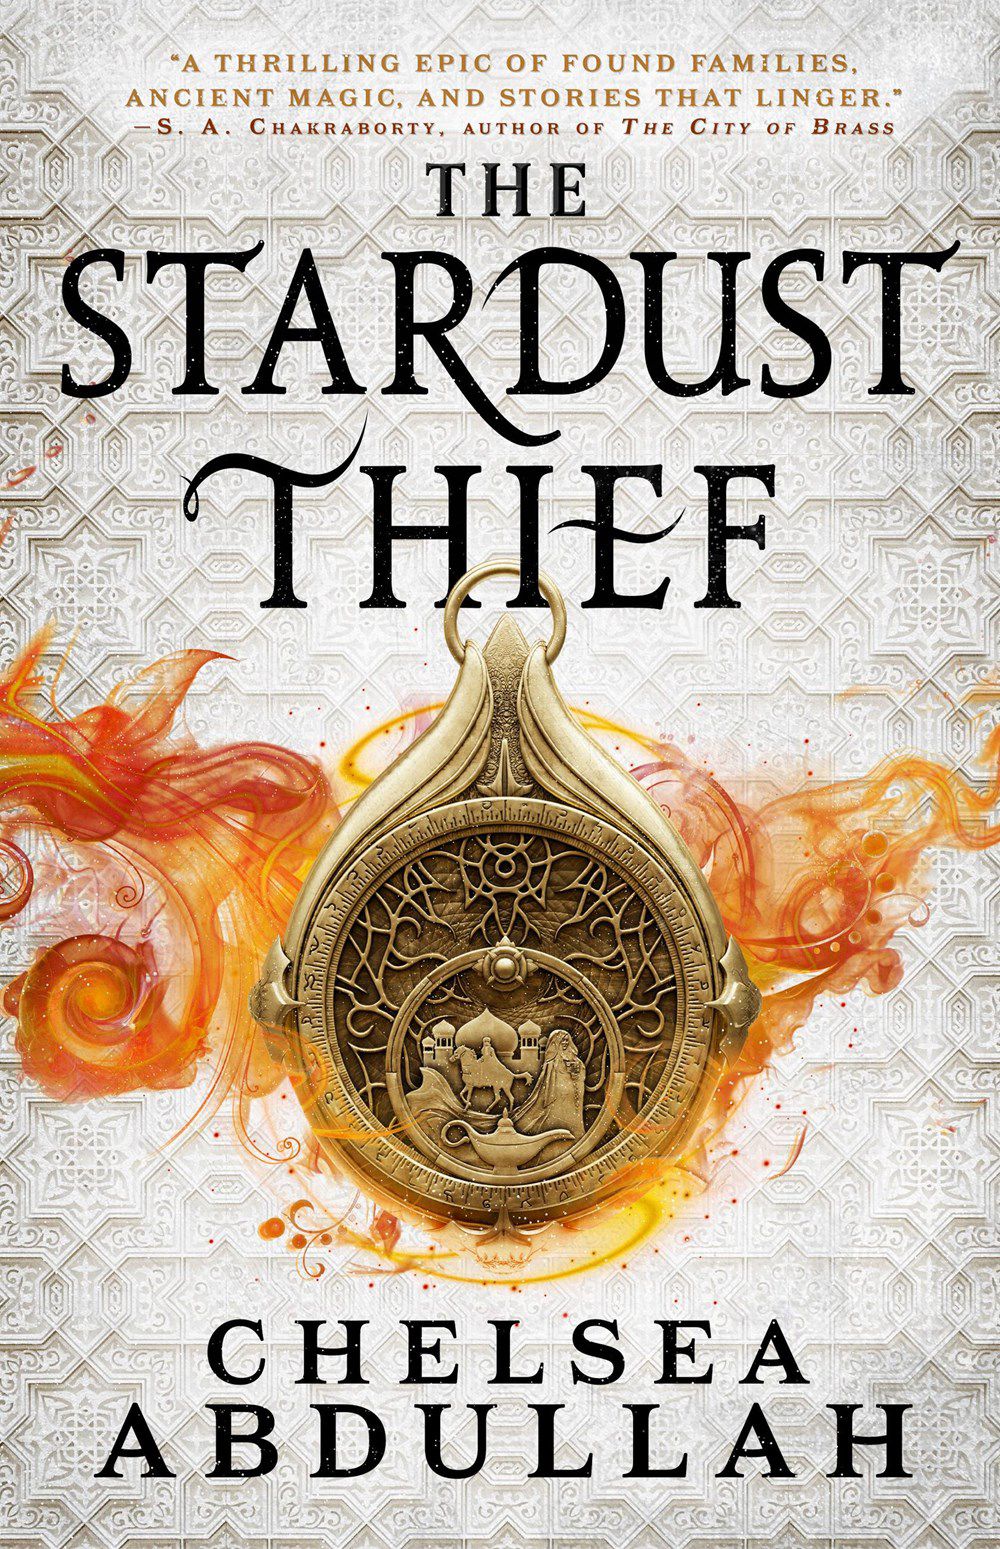 Copertina di The Stardust Thief di Chelsea Abdullah, con un amuleto su sfondo bianco.